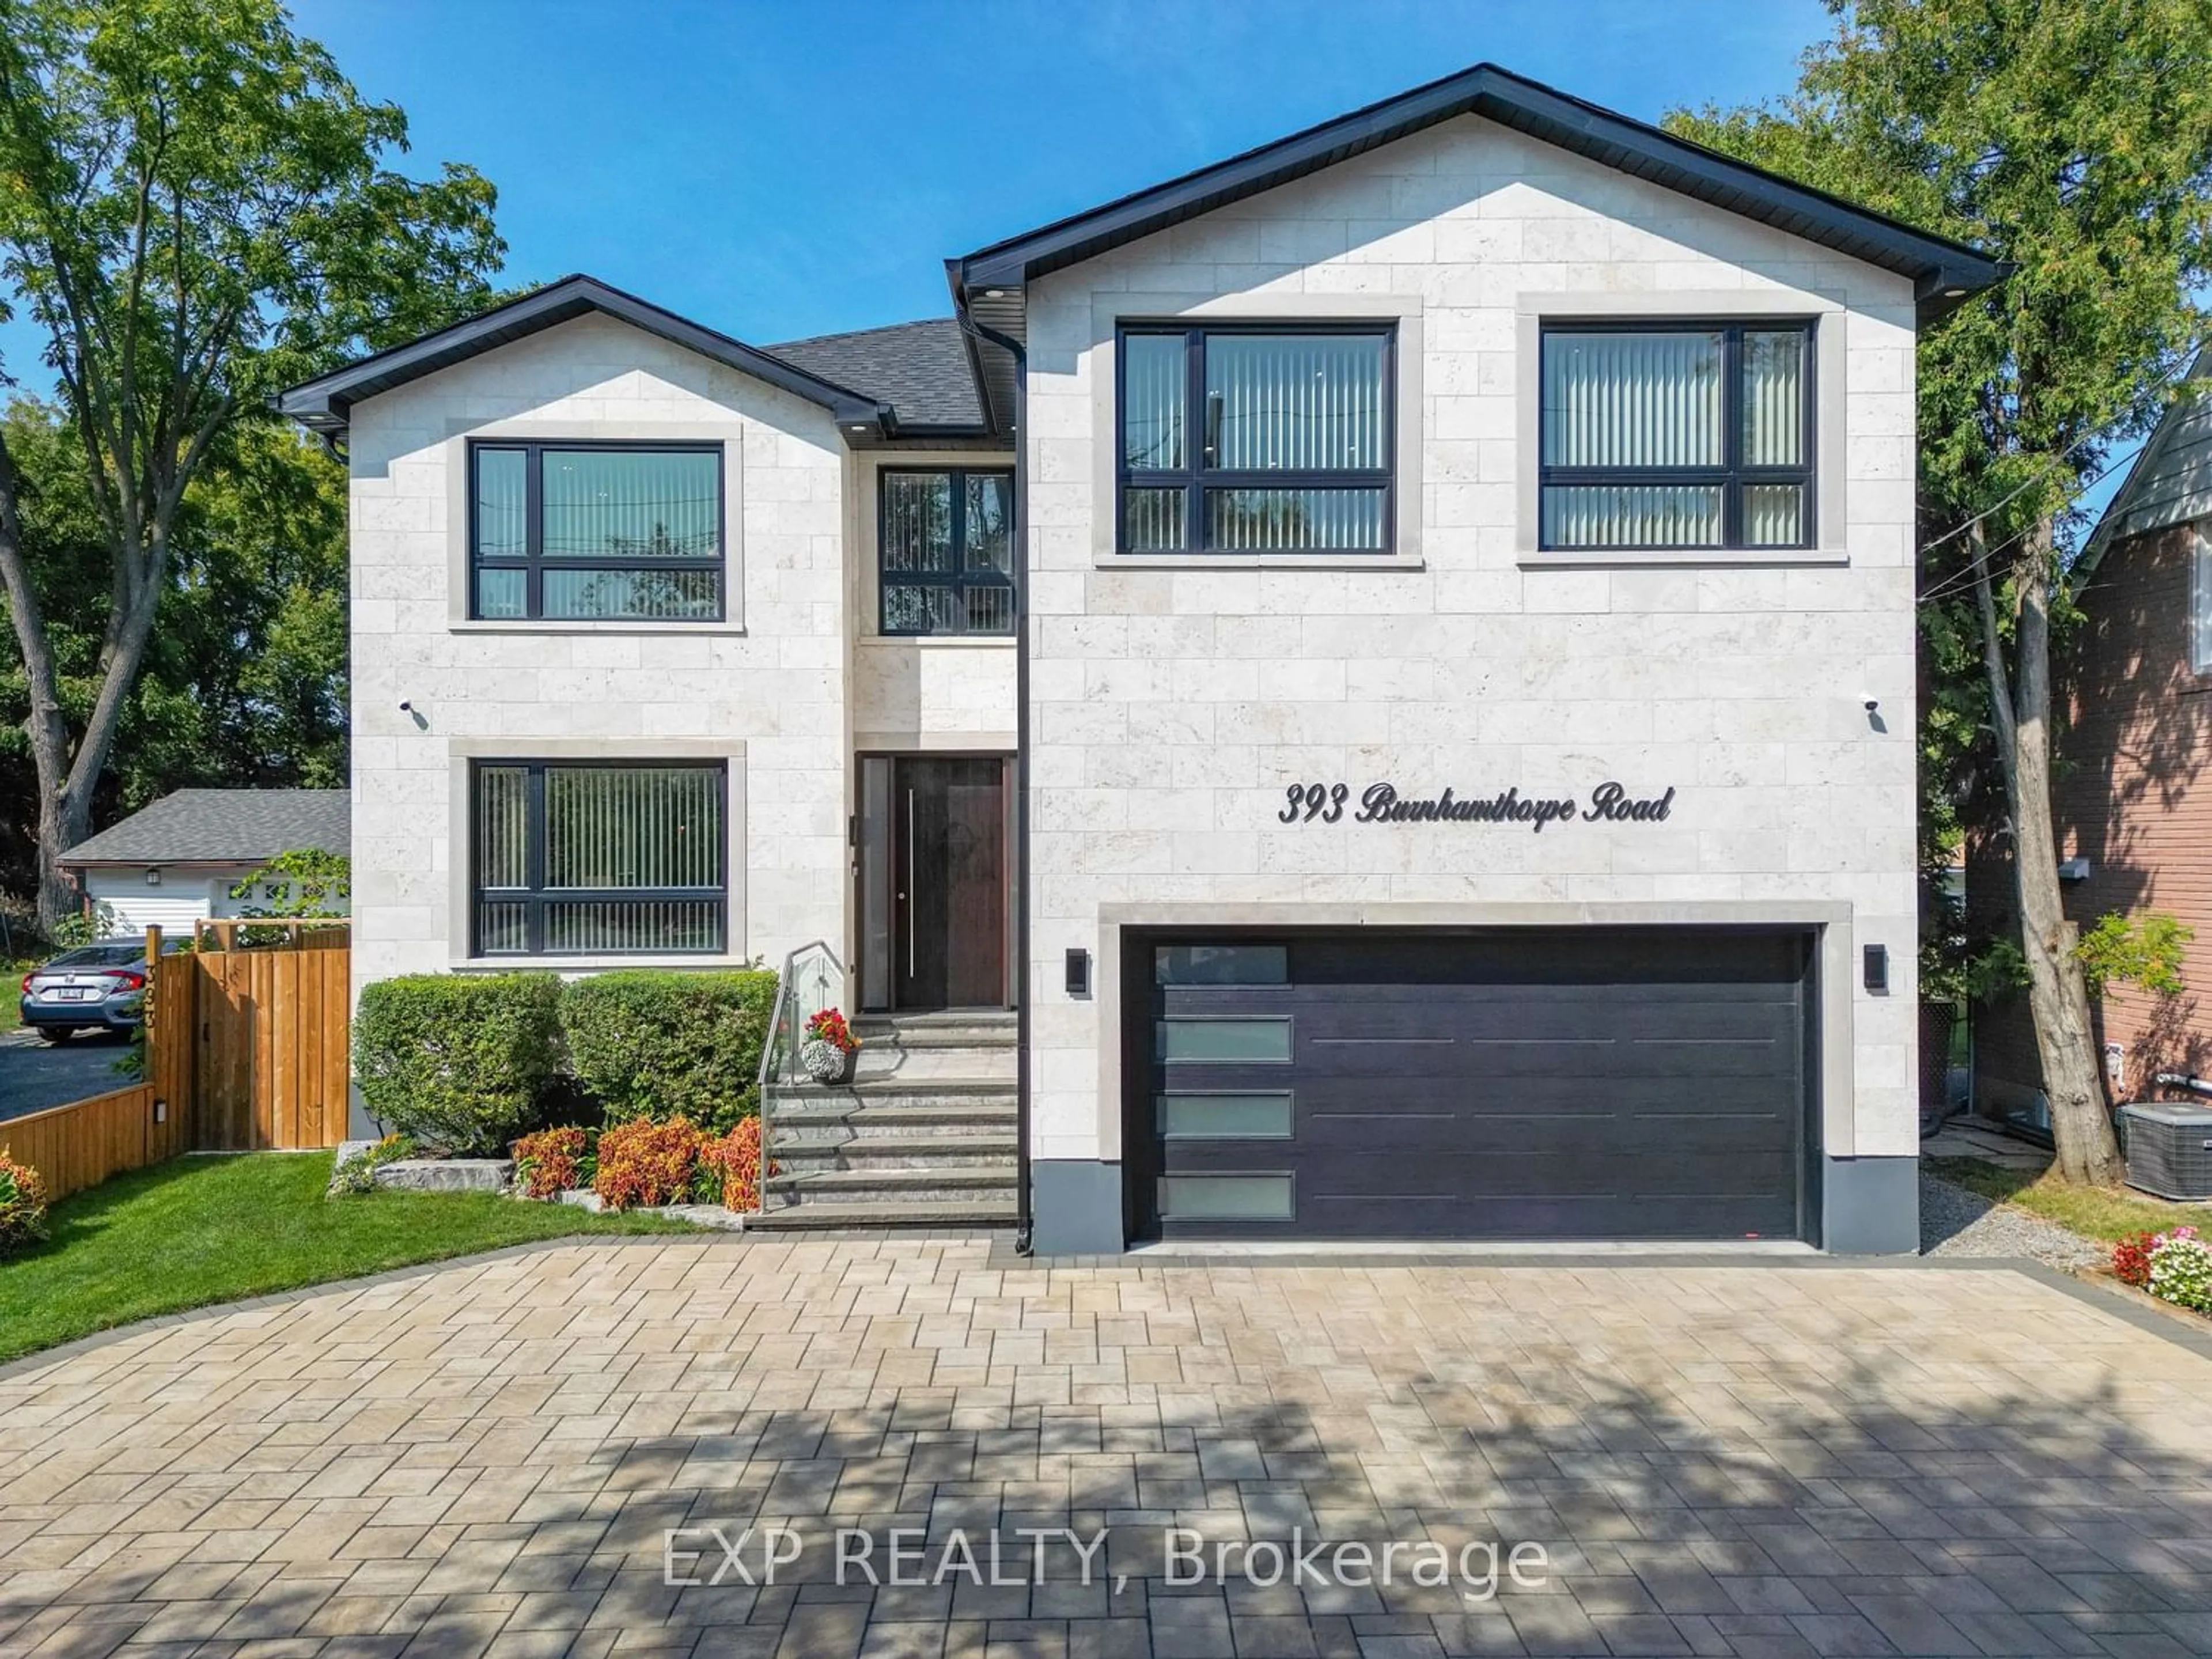 Home with brick exterior material for 393 Burnhamthorpe Rd, Toronto Ontario M9B 2A7